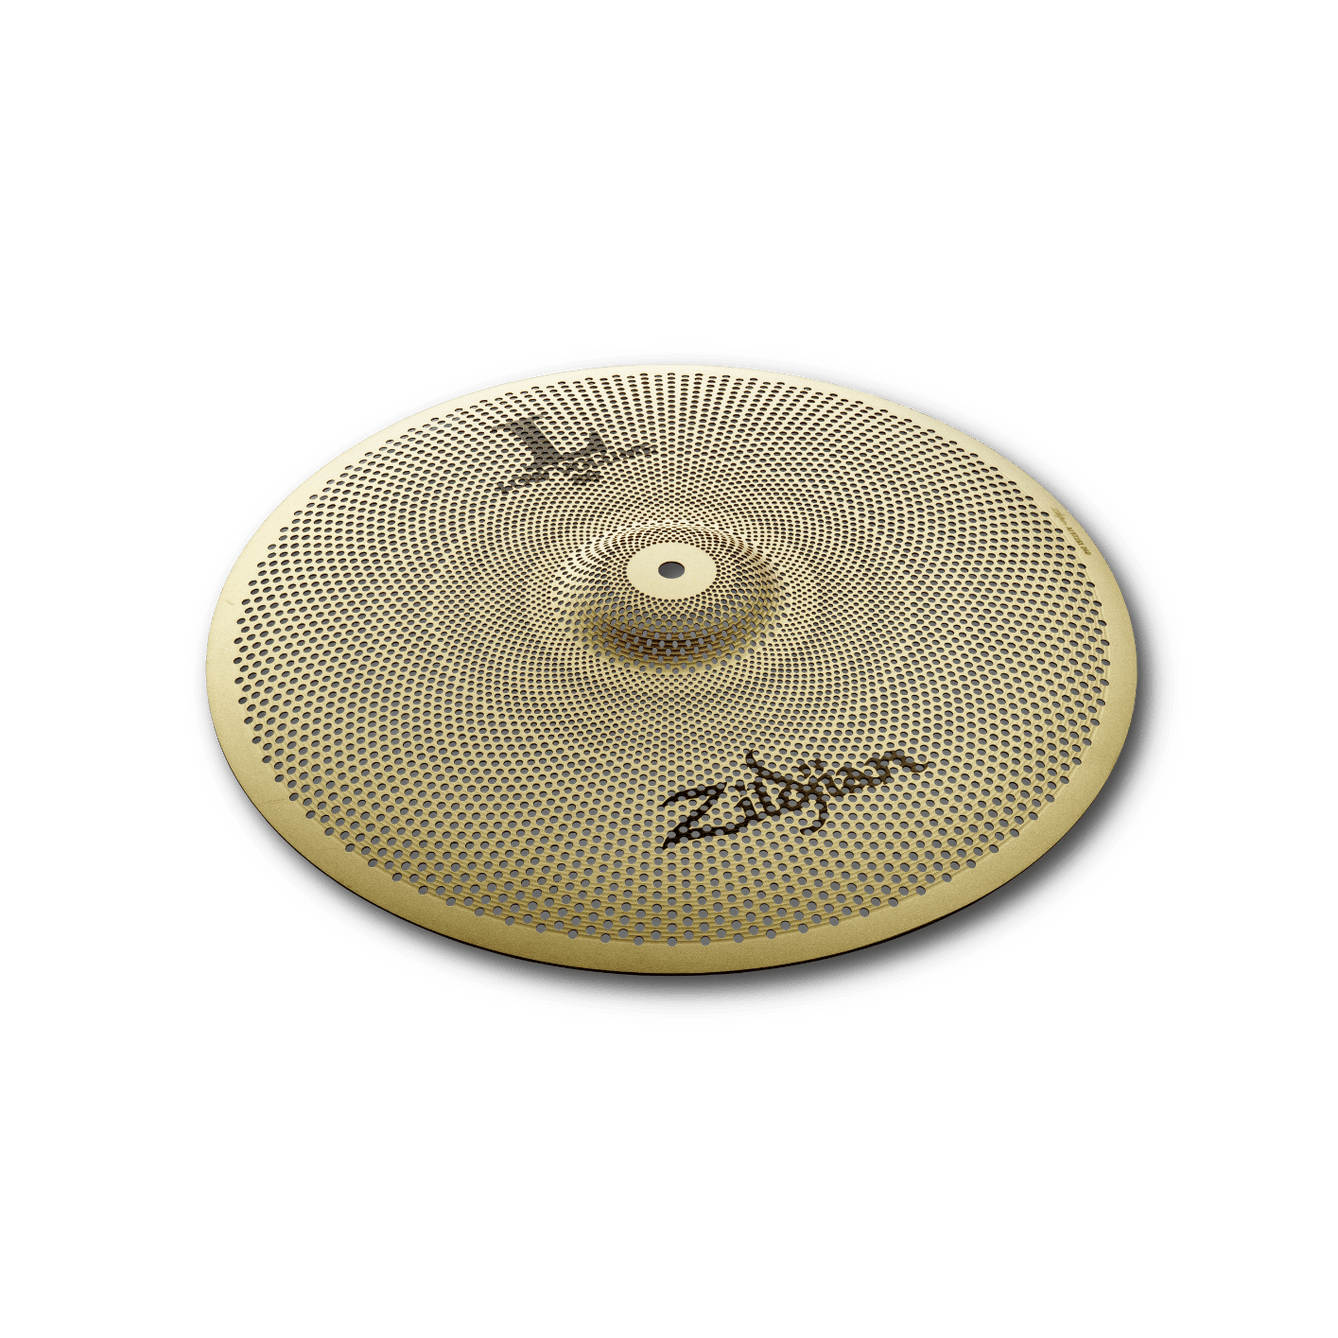 Crash/Ride Cymbal Zildjian L80 Low Volume-Mai Nguyên Music